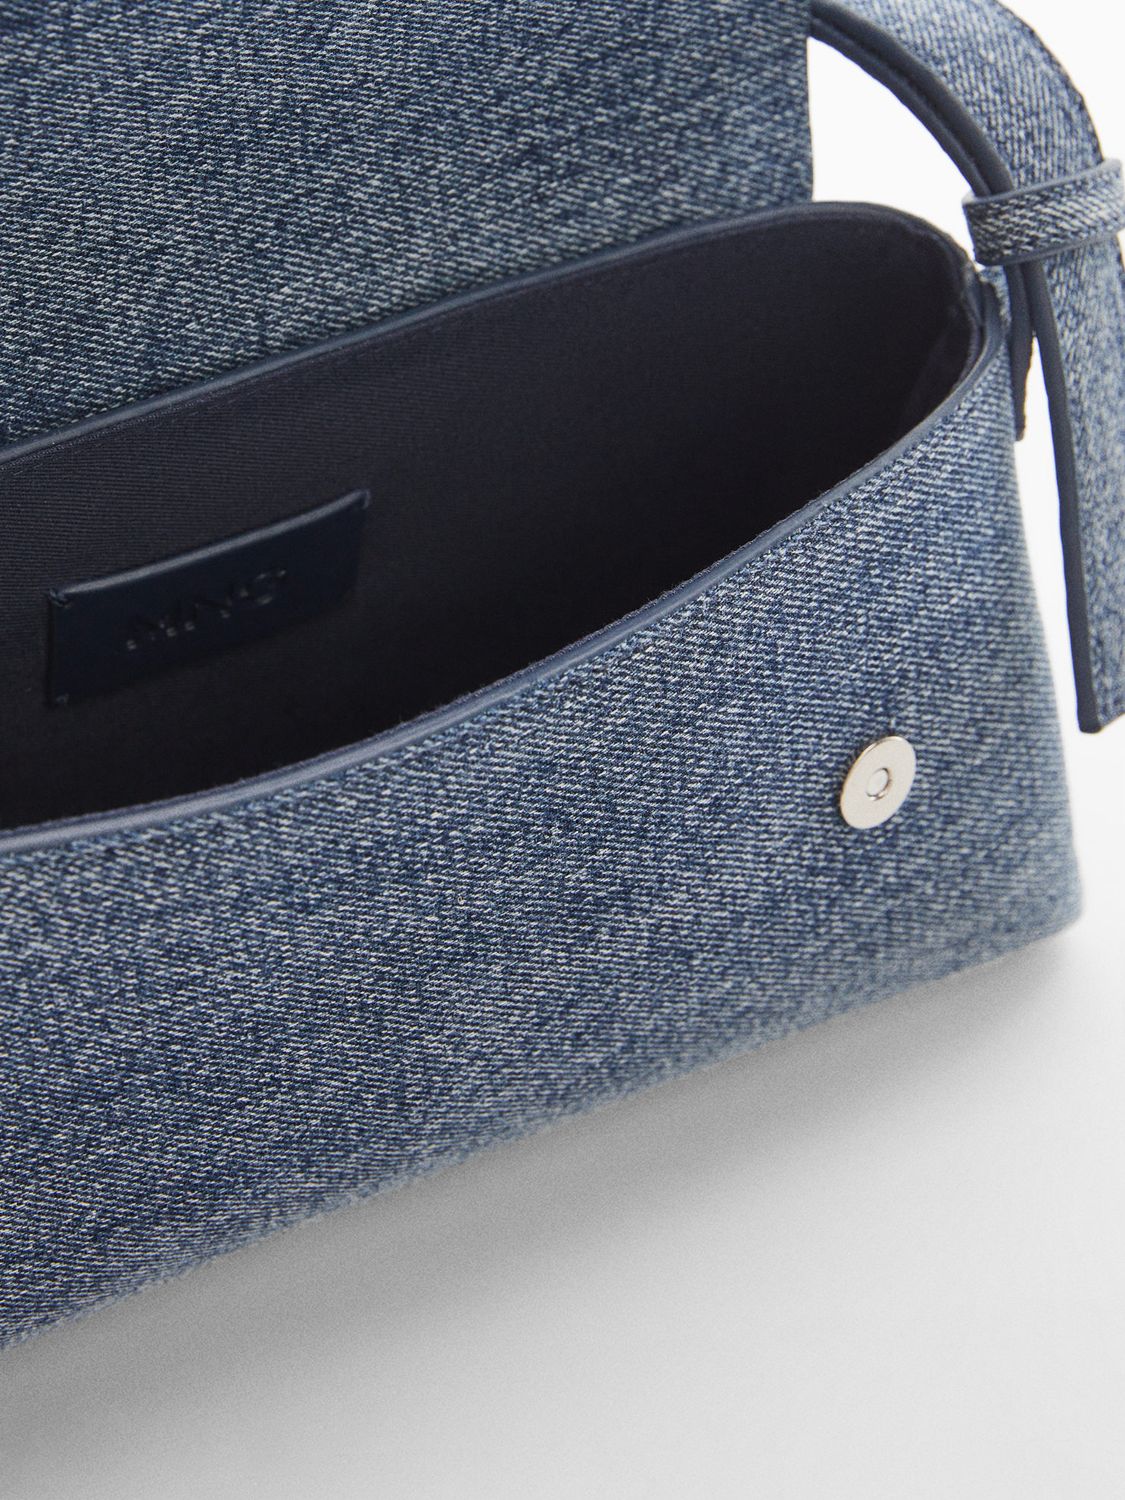 Buy Mango Lucer Denim Shoulder Bag, Open Blue Online at johnlewis.com